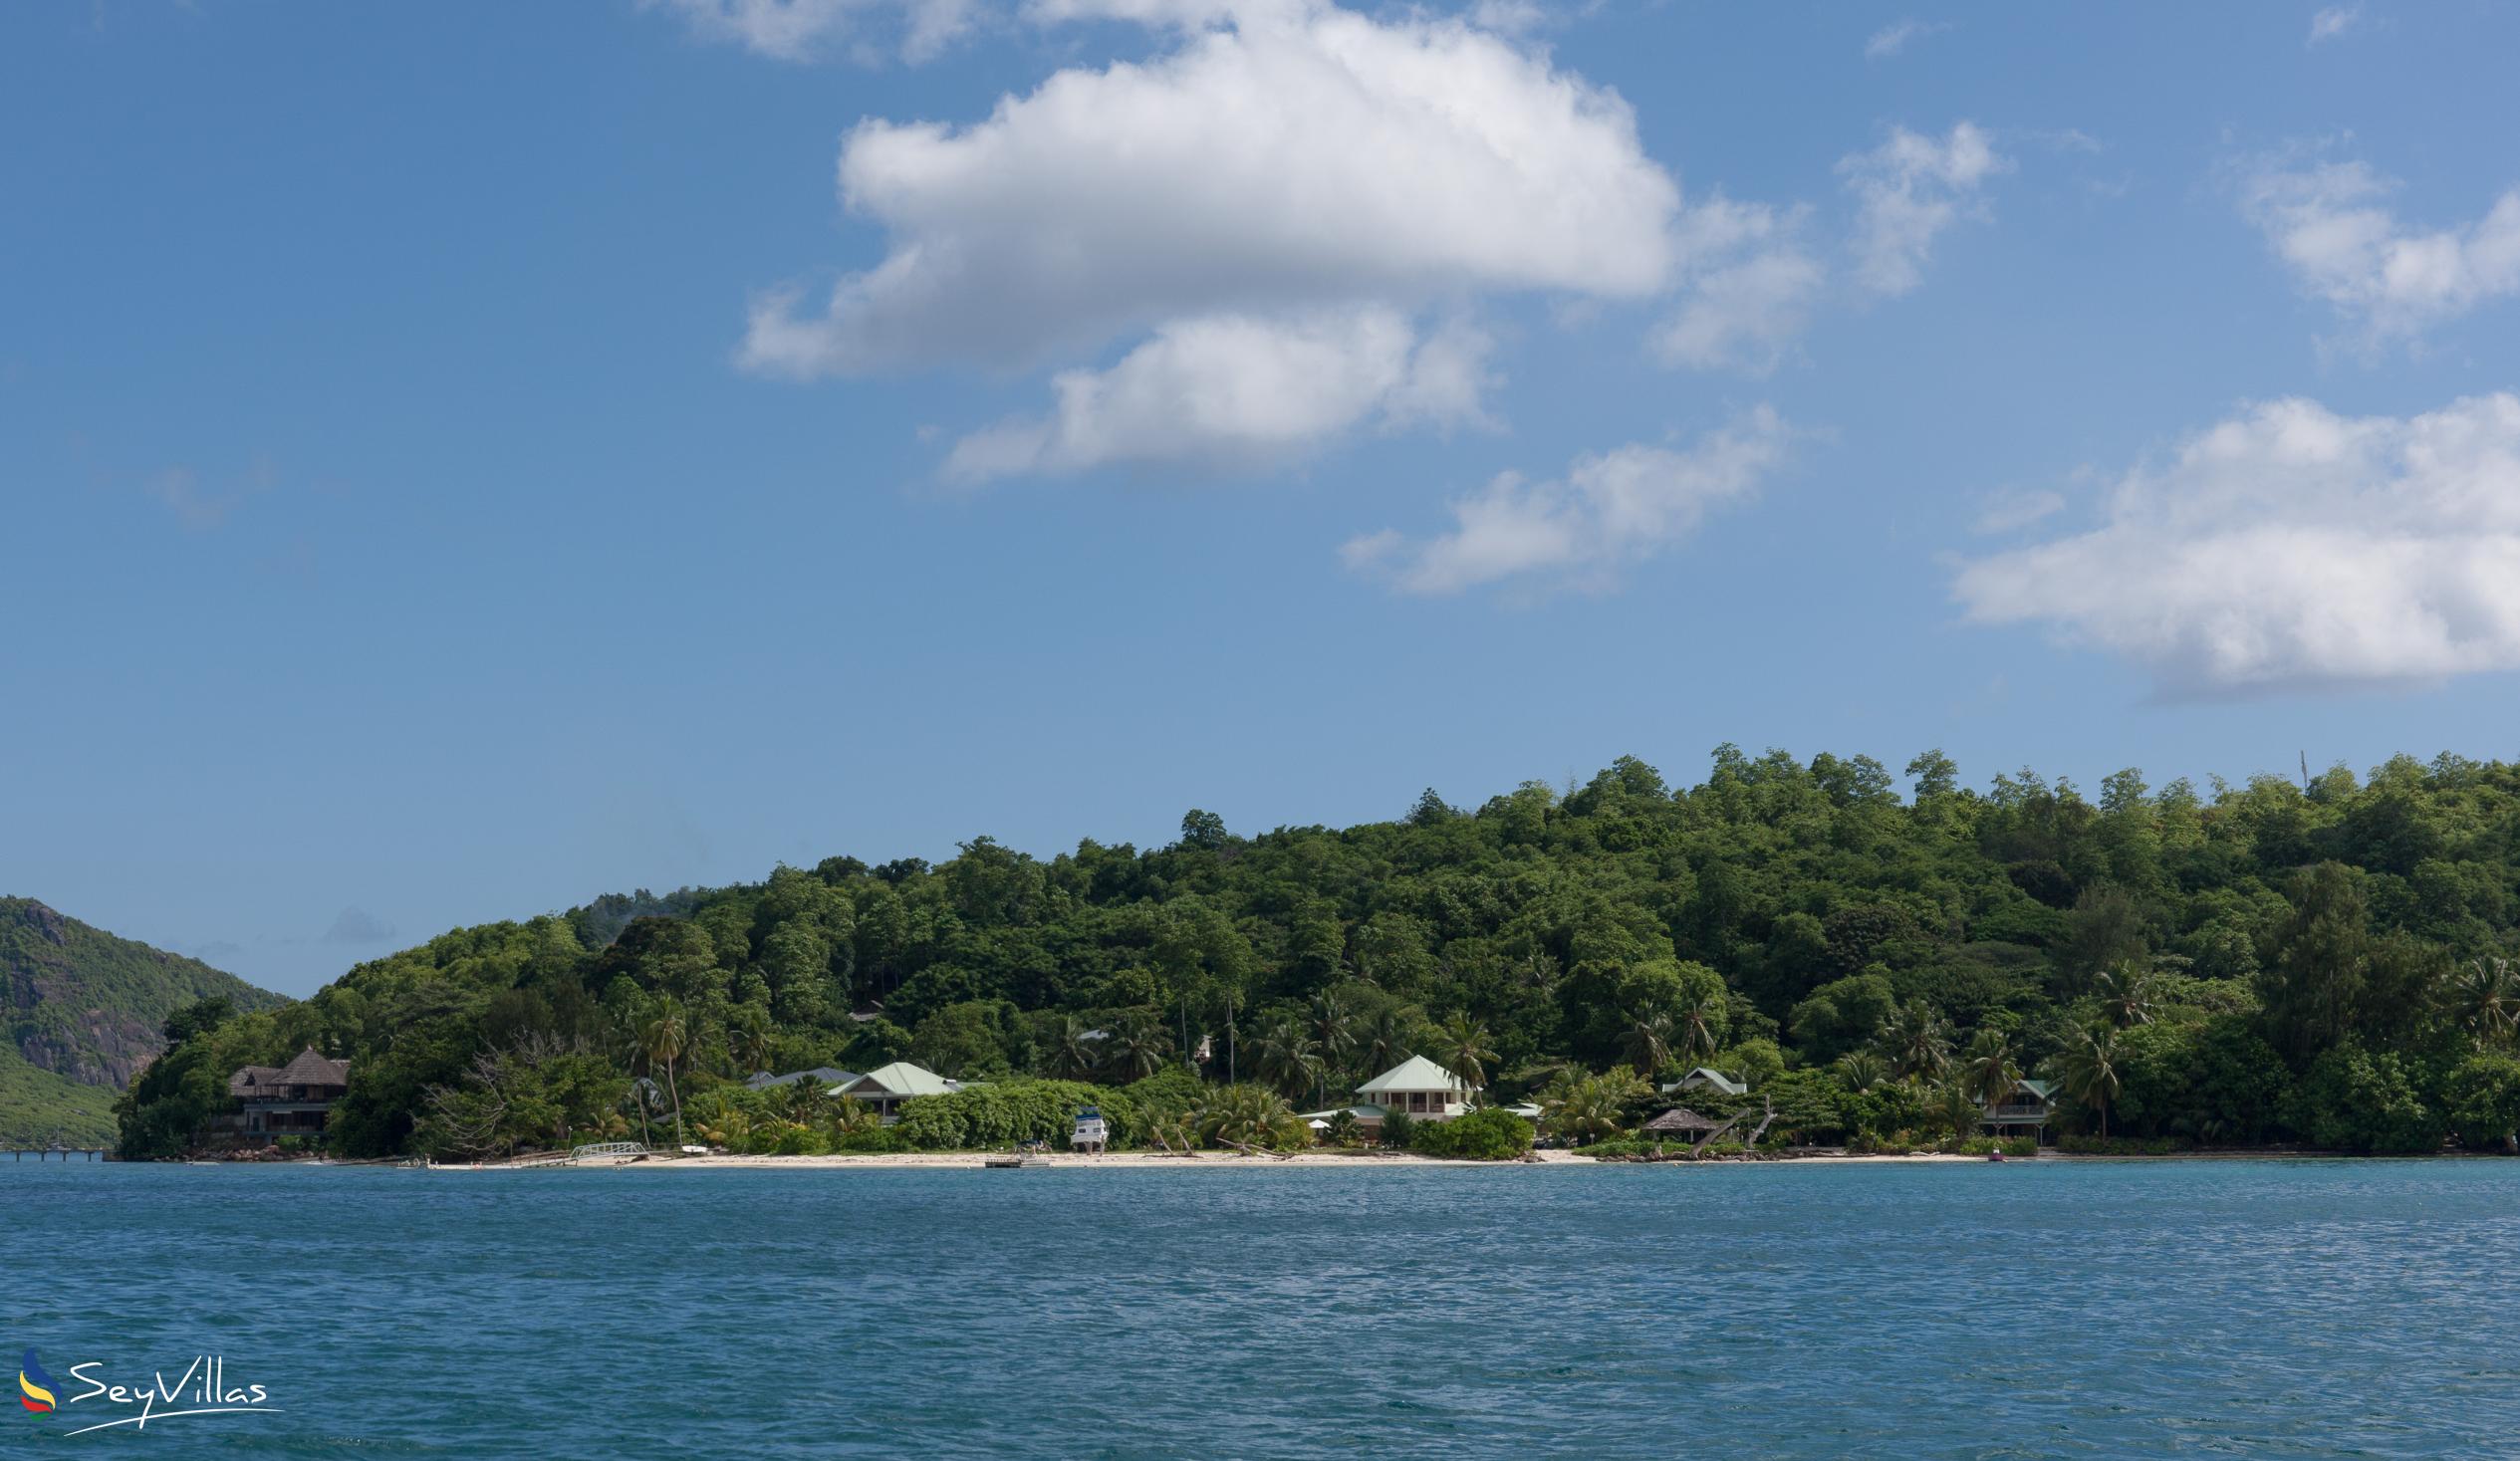 Foto 15: Villa de Cerf - Posizione - Cerf Island (Seychelles)